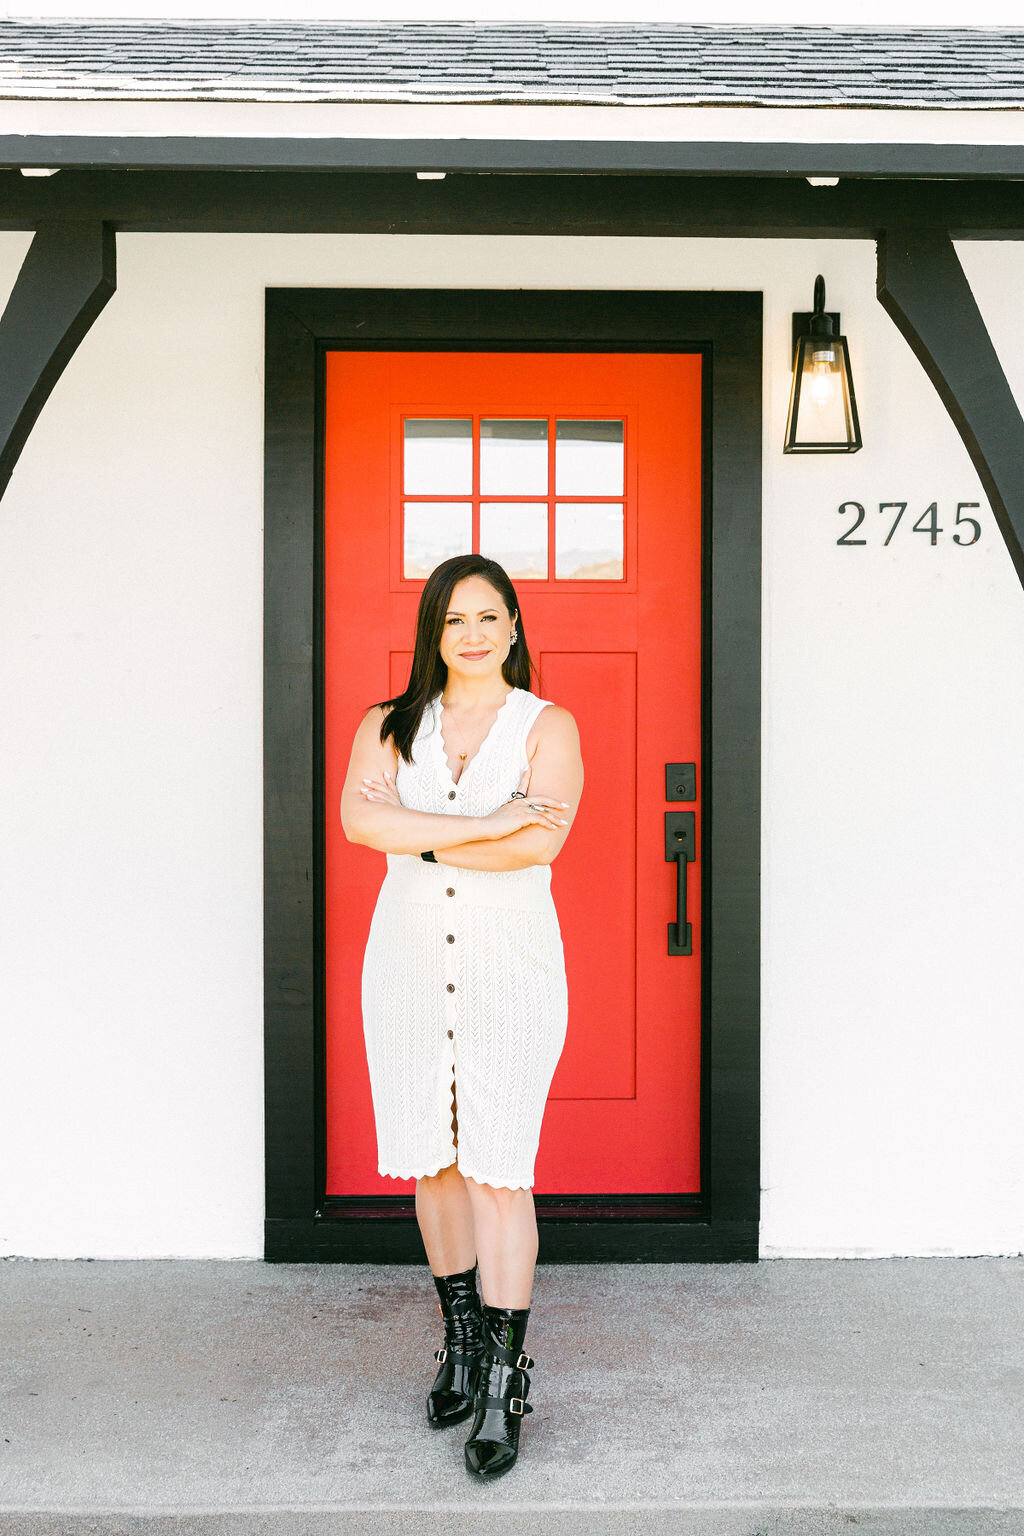 Real Estate agent standing in front of red door by Chelsea Loren branding photographer.